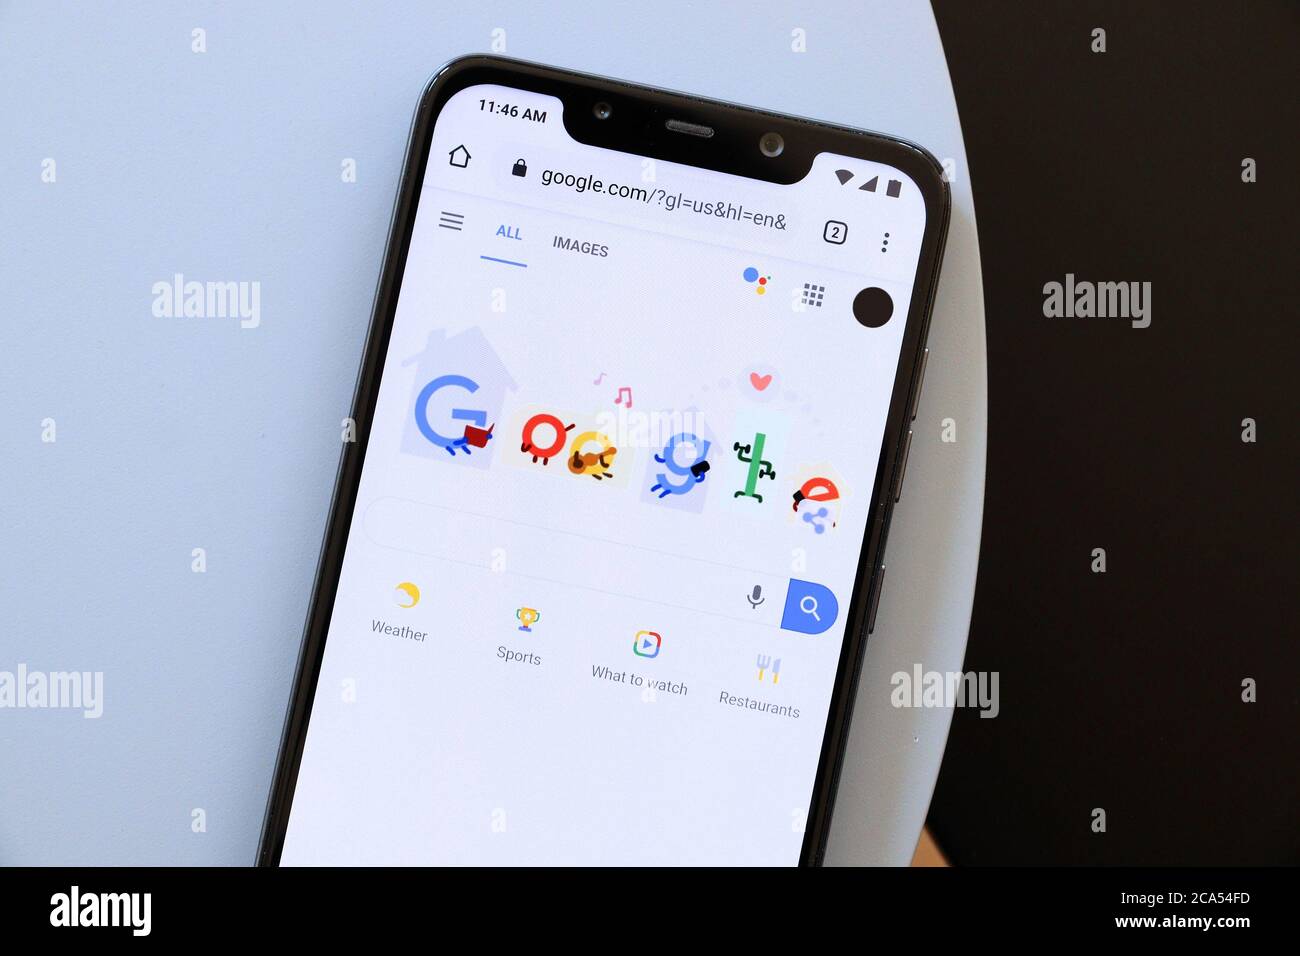 VARSOVIA, POLONIA - 21 DE ABRIL de 2020: Sitio web de búsqueda de Google mostrado en un Xiaomi F1 Pocophone Android smartphone. Foto de stock